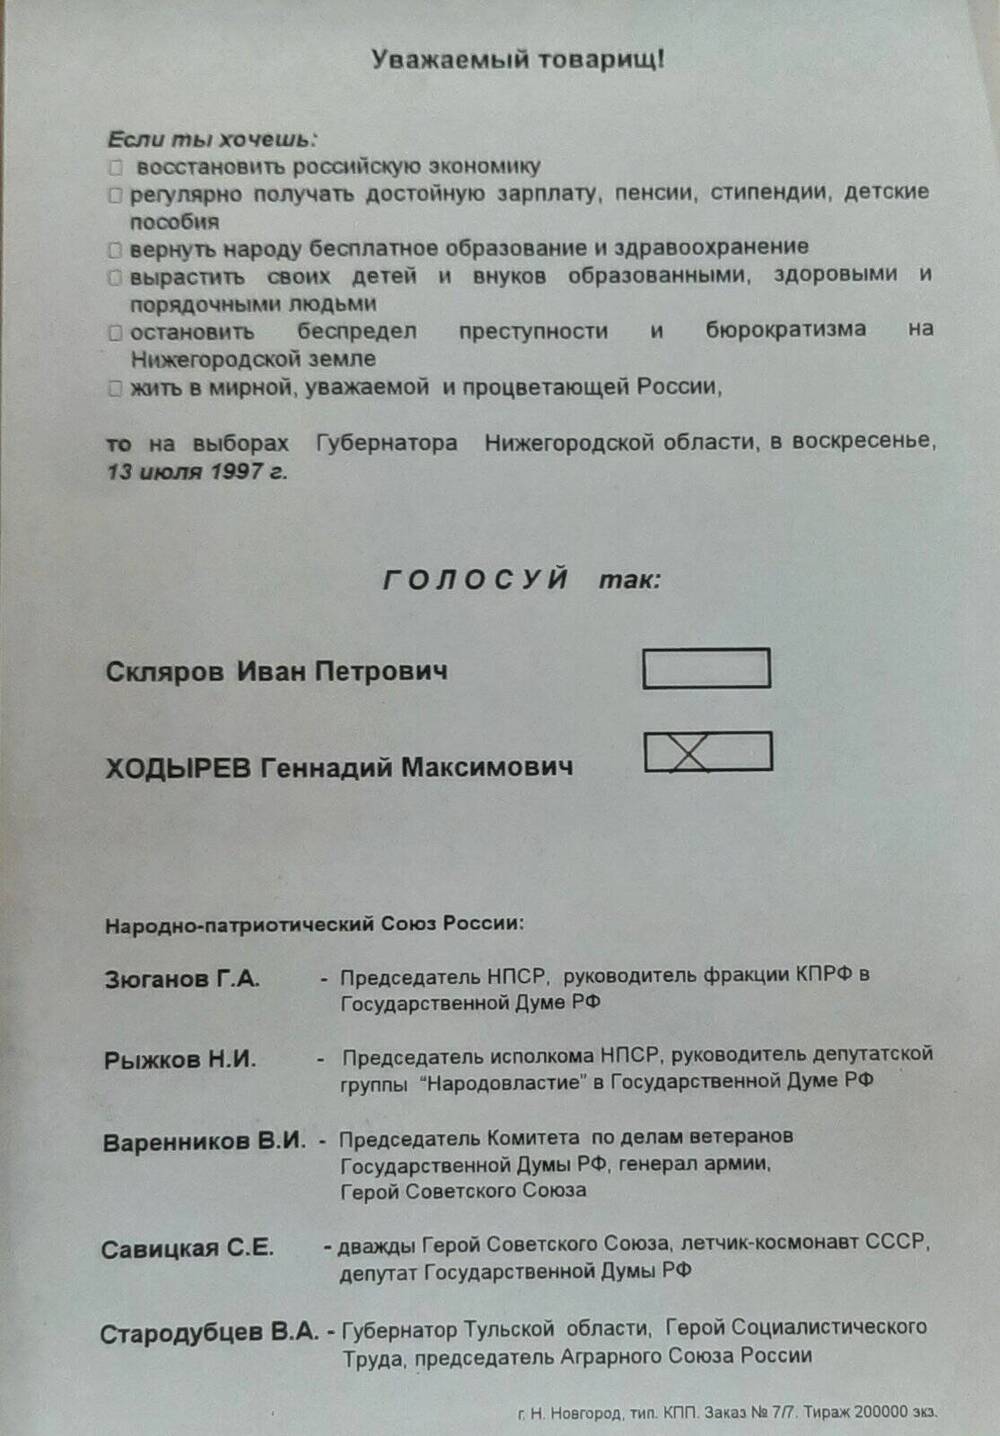 Листовка в поддержку Ходырева Г.М. на выборах губернатора